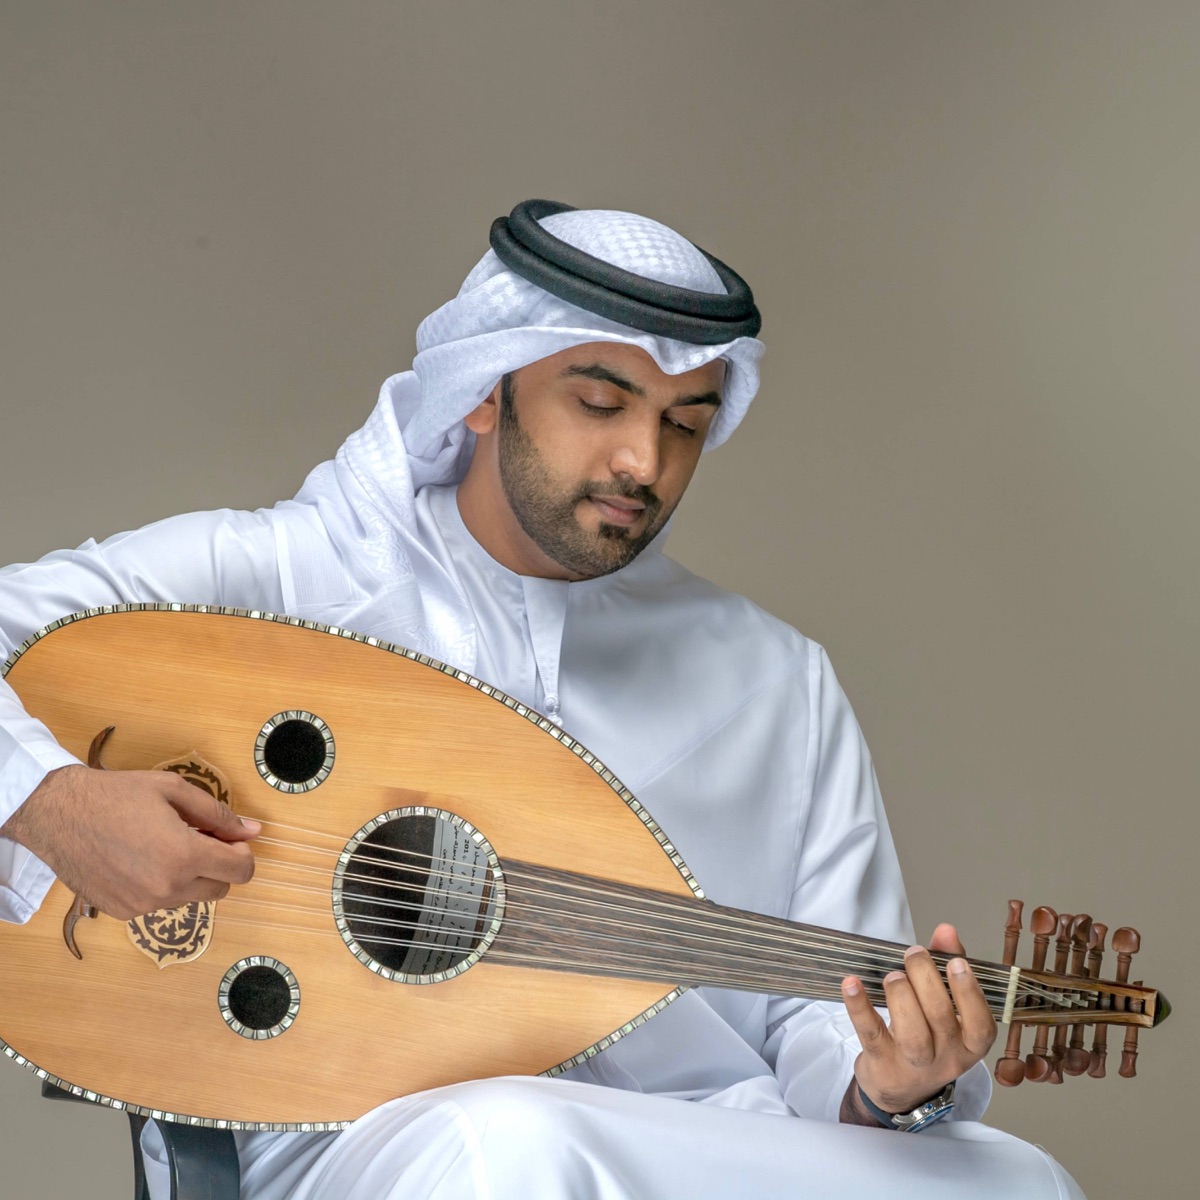 ياطيب القلب وينك - Single - Album by محمد الماسي - Apple Music